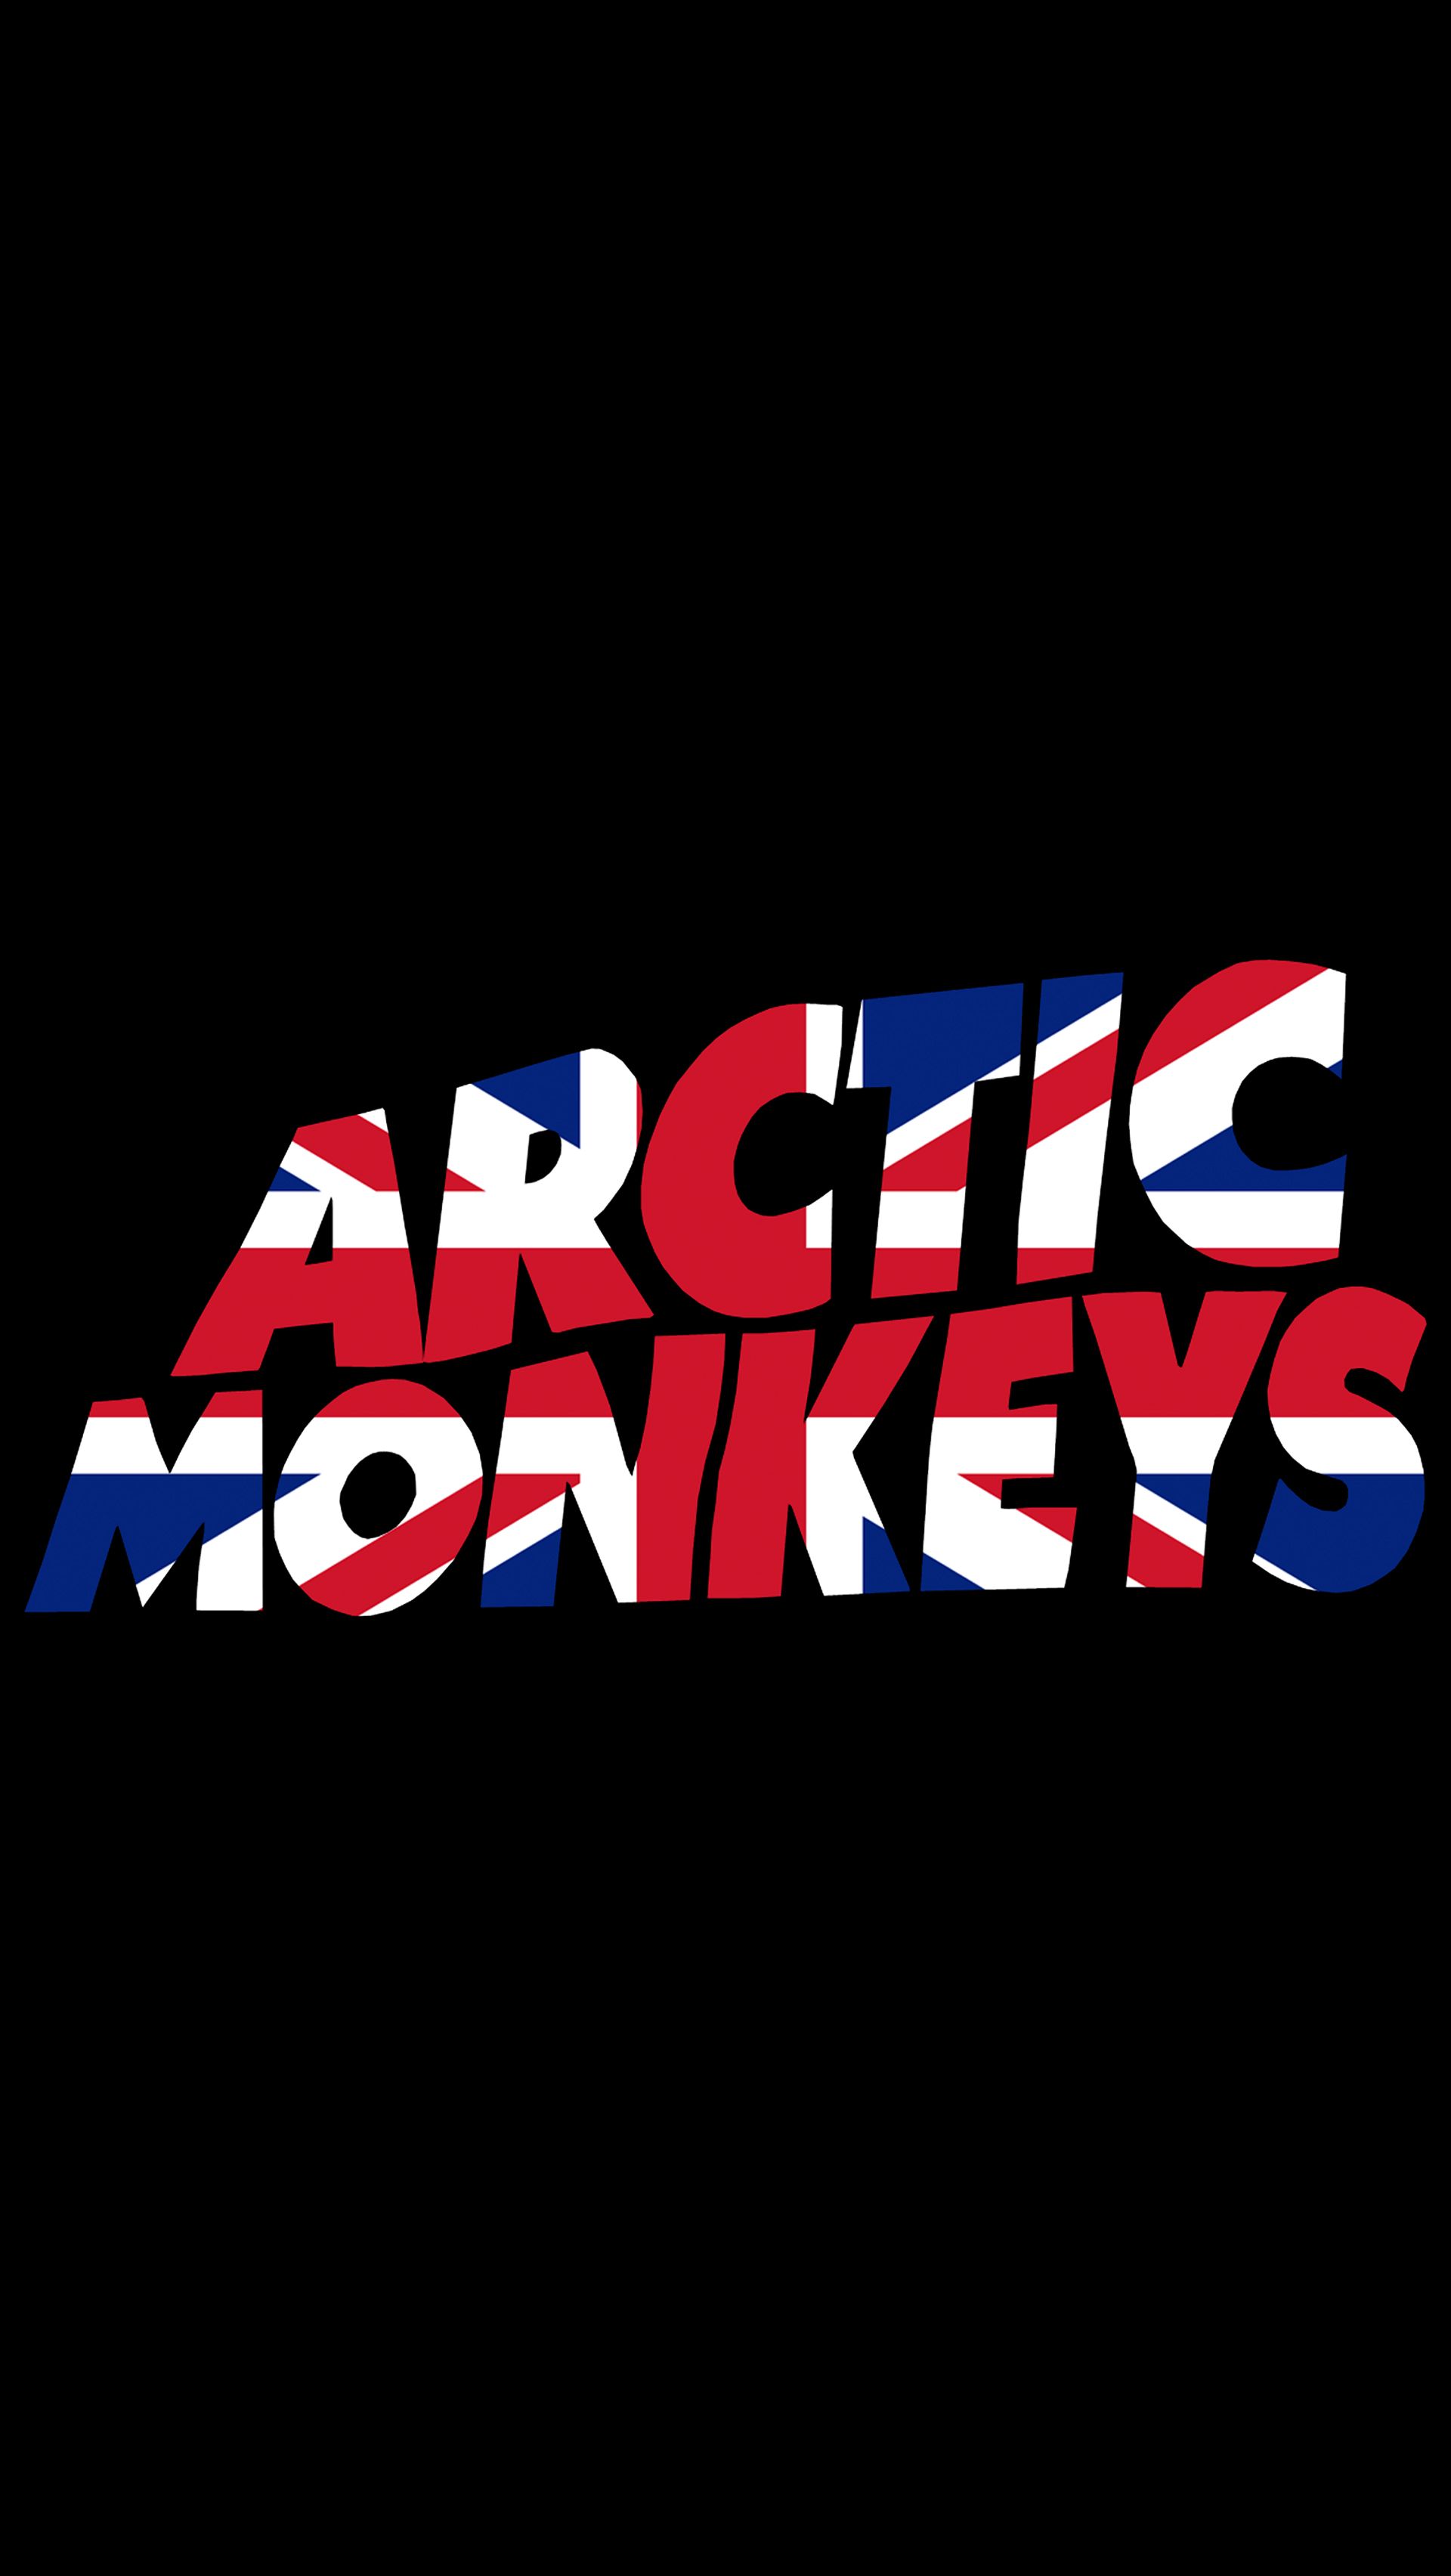 Arctic Monkeys | nathanjayrog